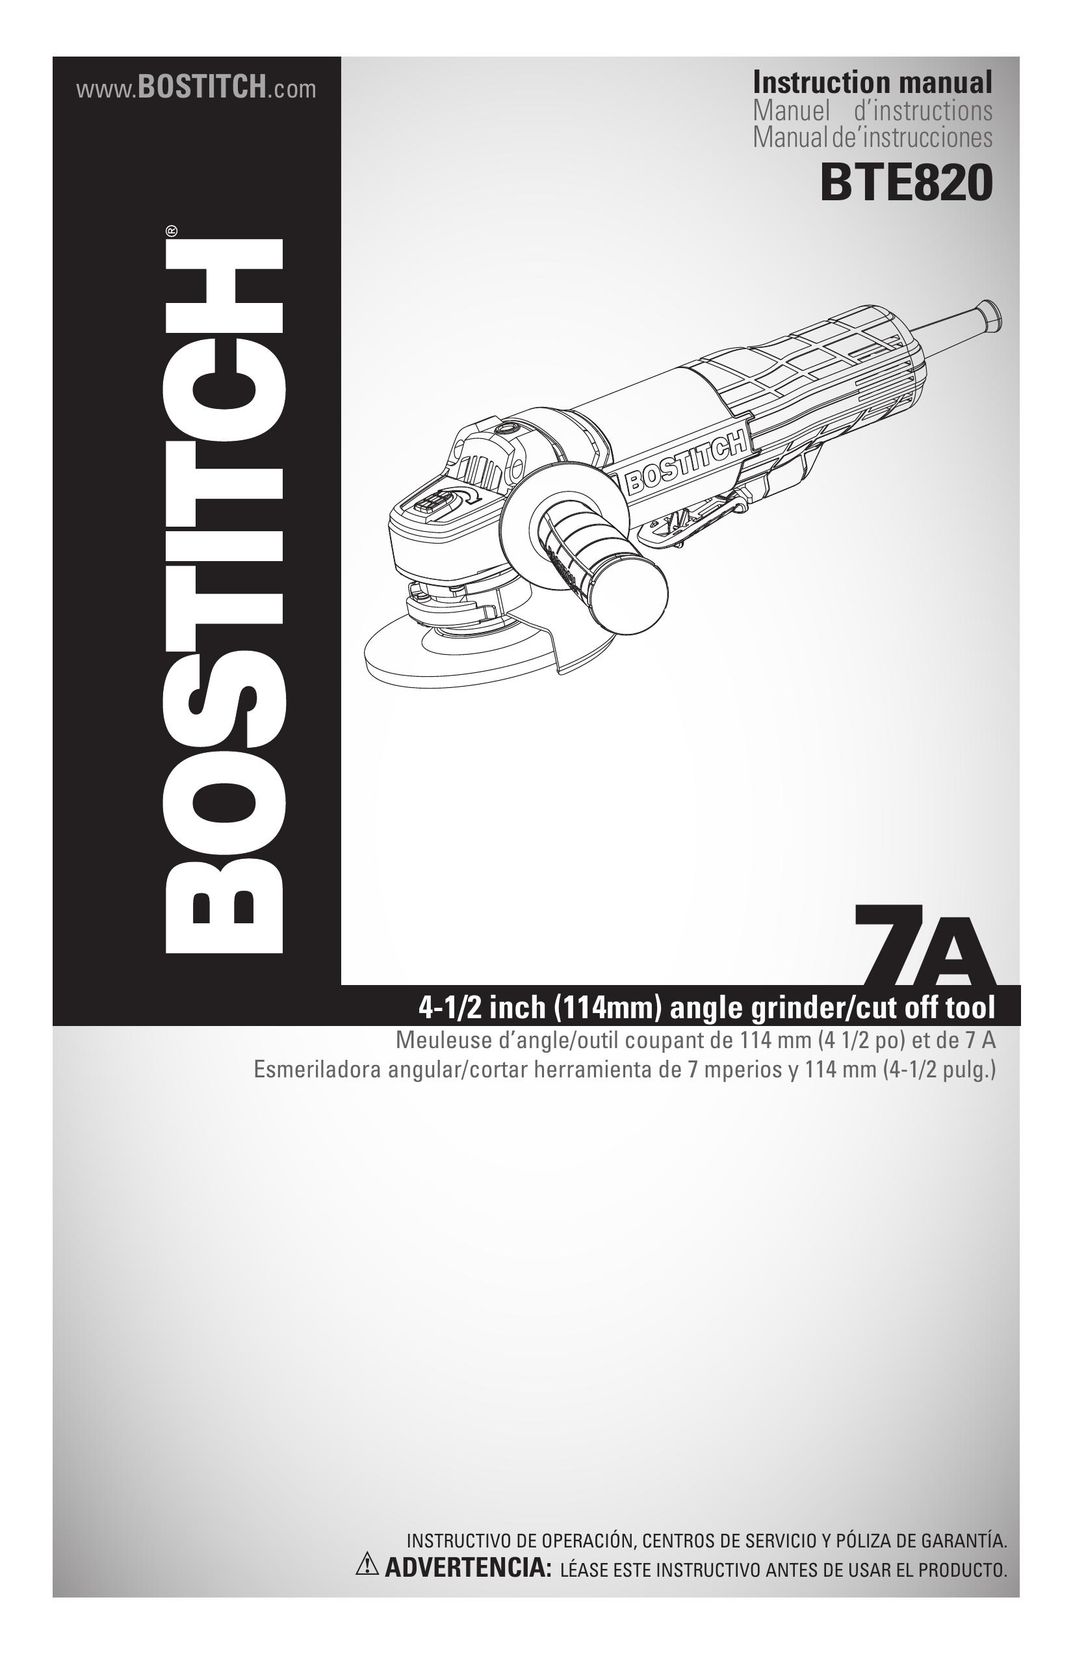 Bostitch BTE820K Grinder User Manual